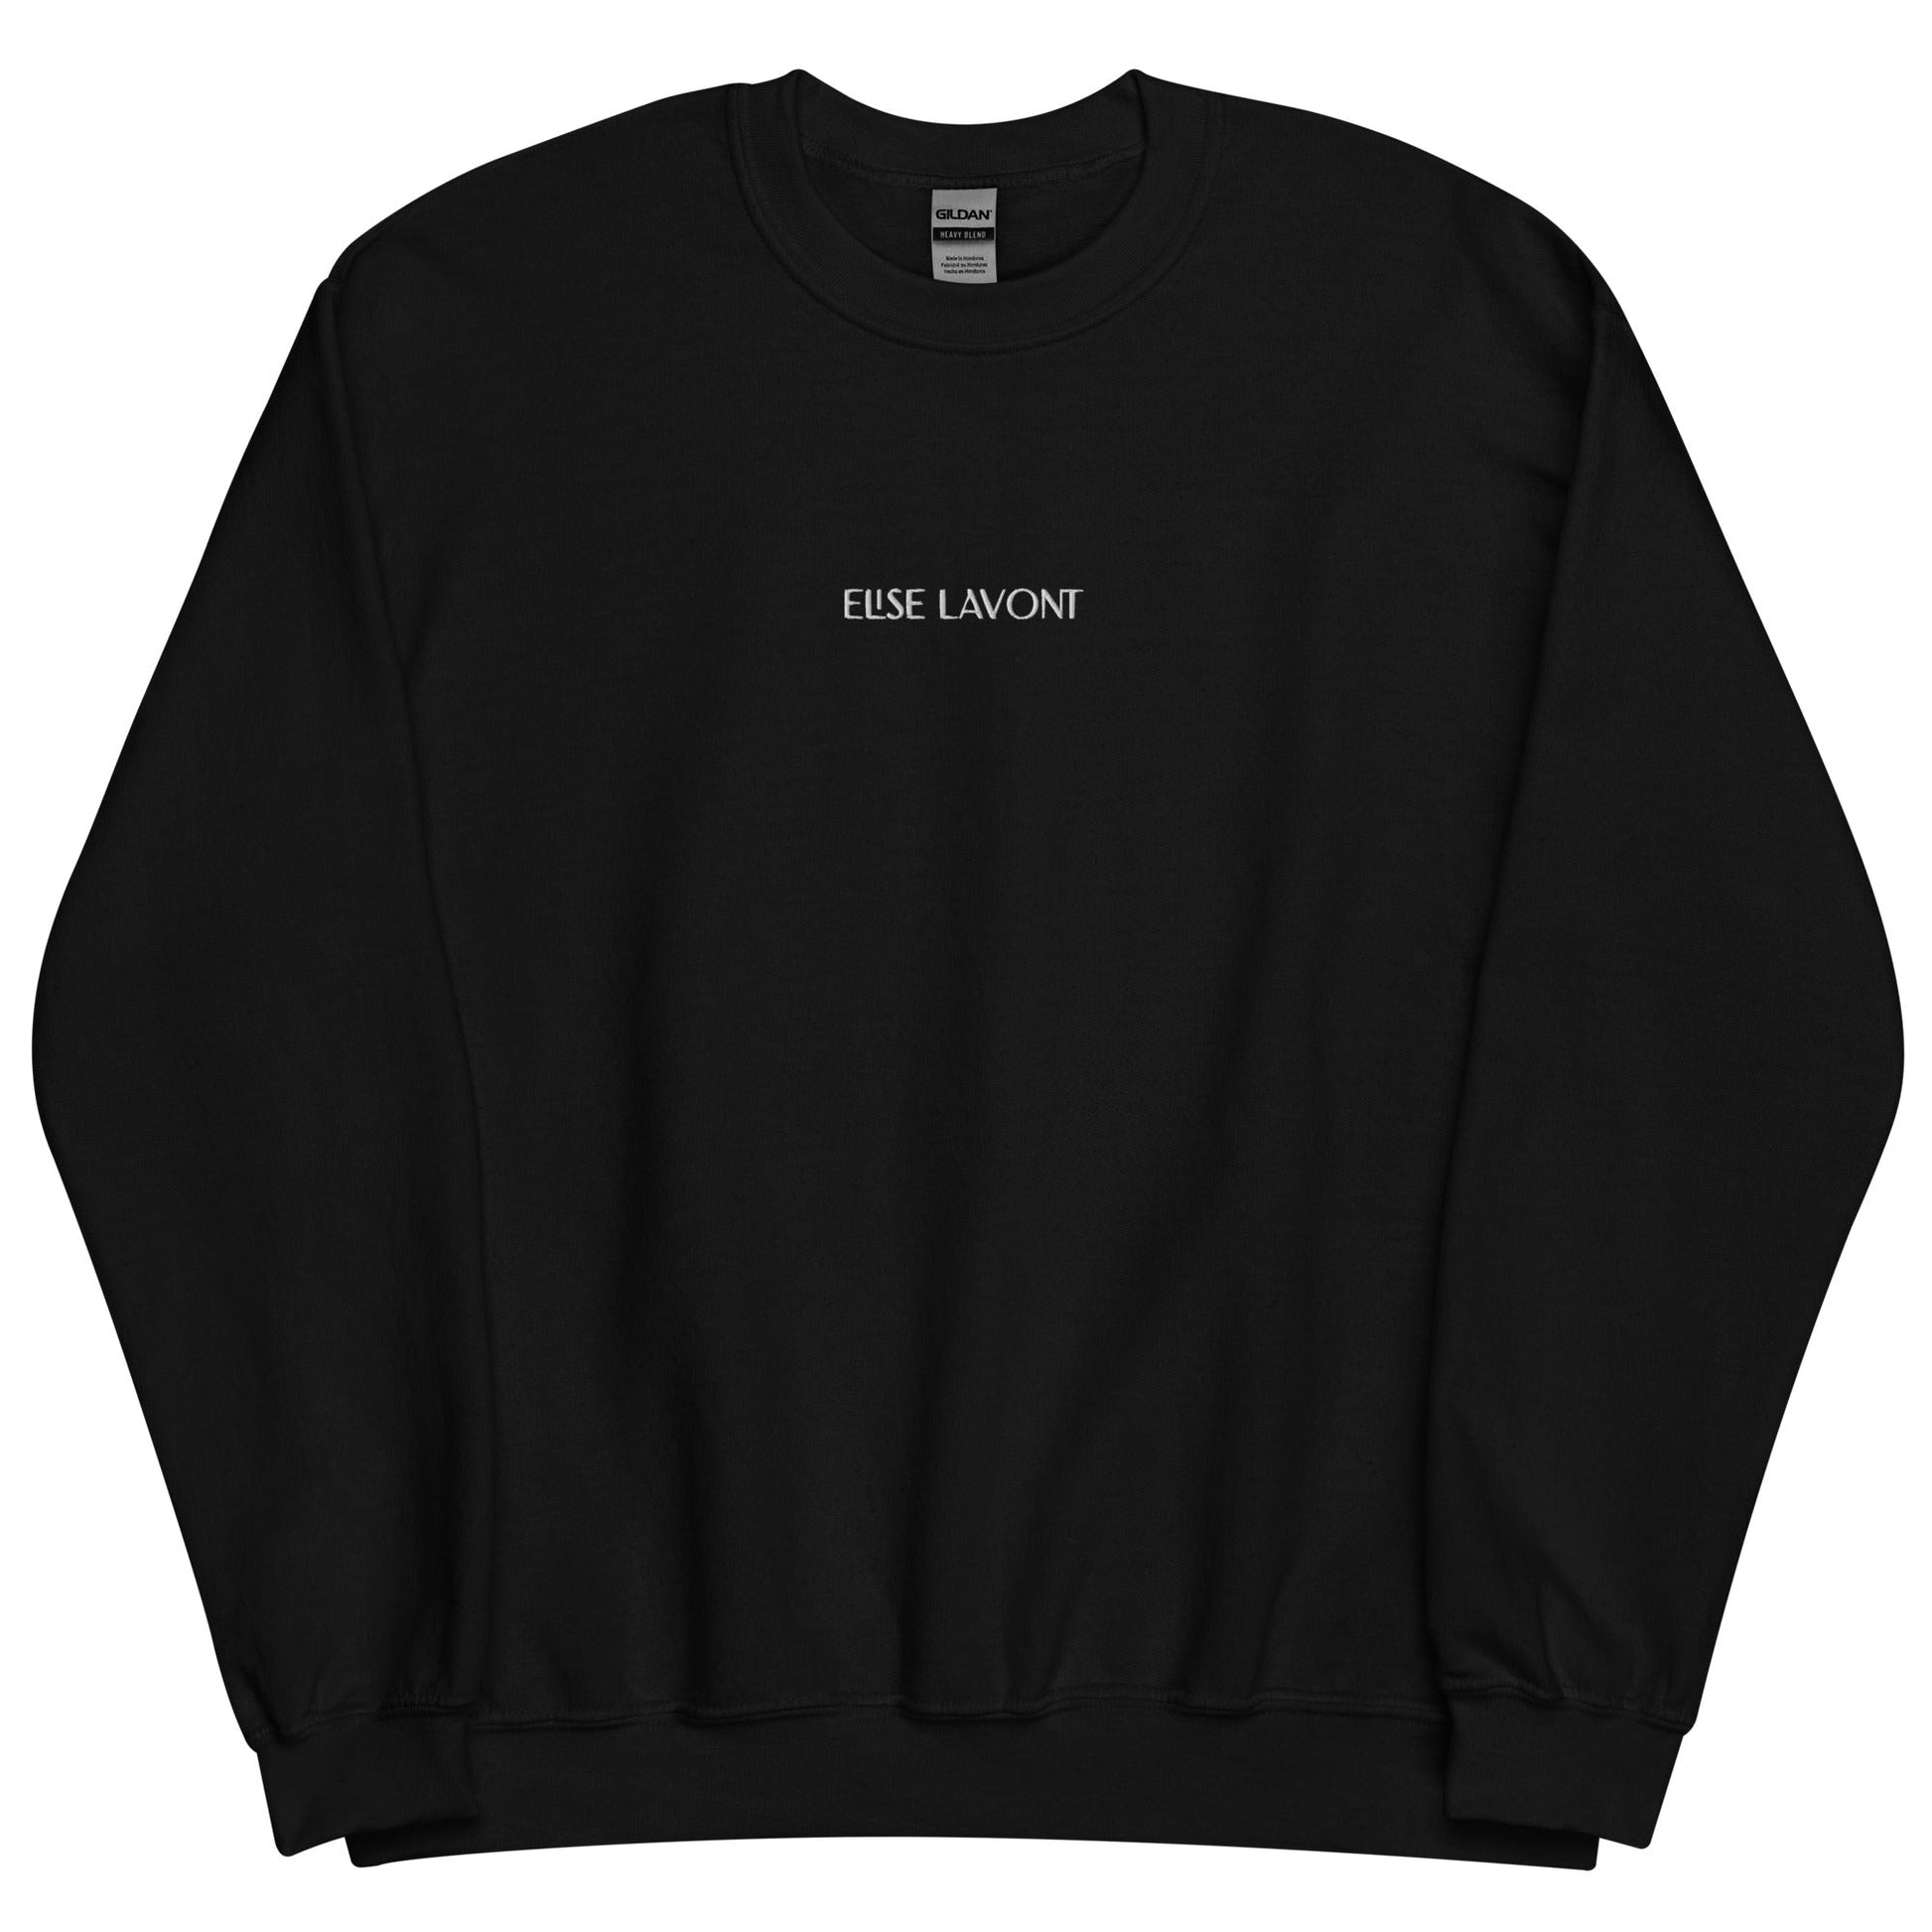 Urban Coziness Unisex Sweatshirt - Elise Lavont